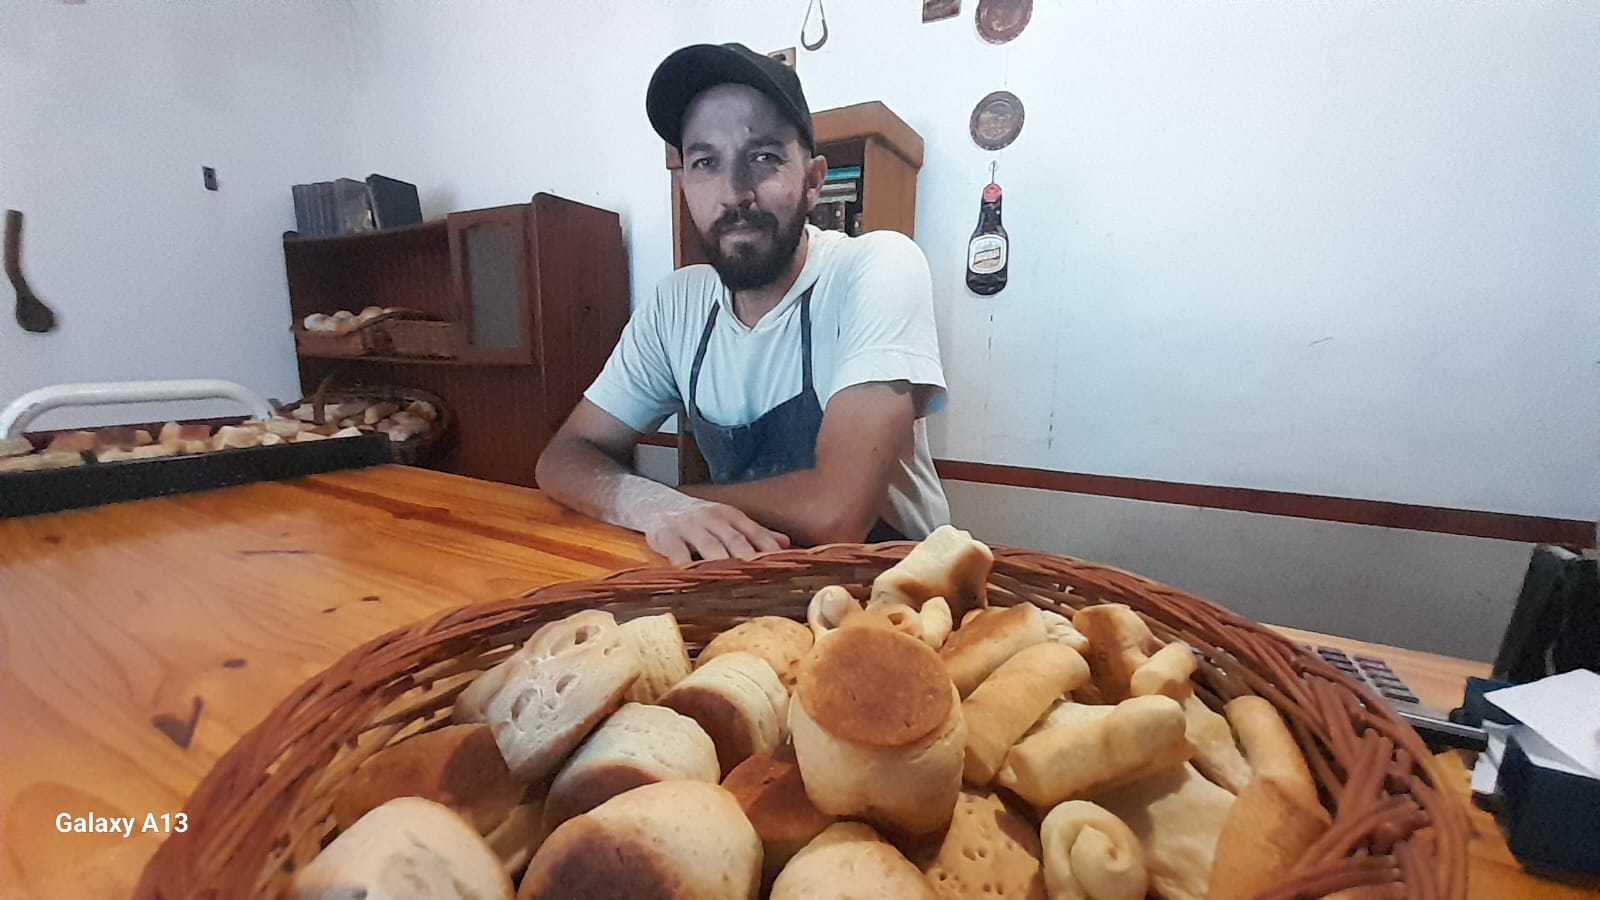 Mariano, el profe de lengua que heredó el oficio de panadero